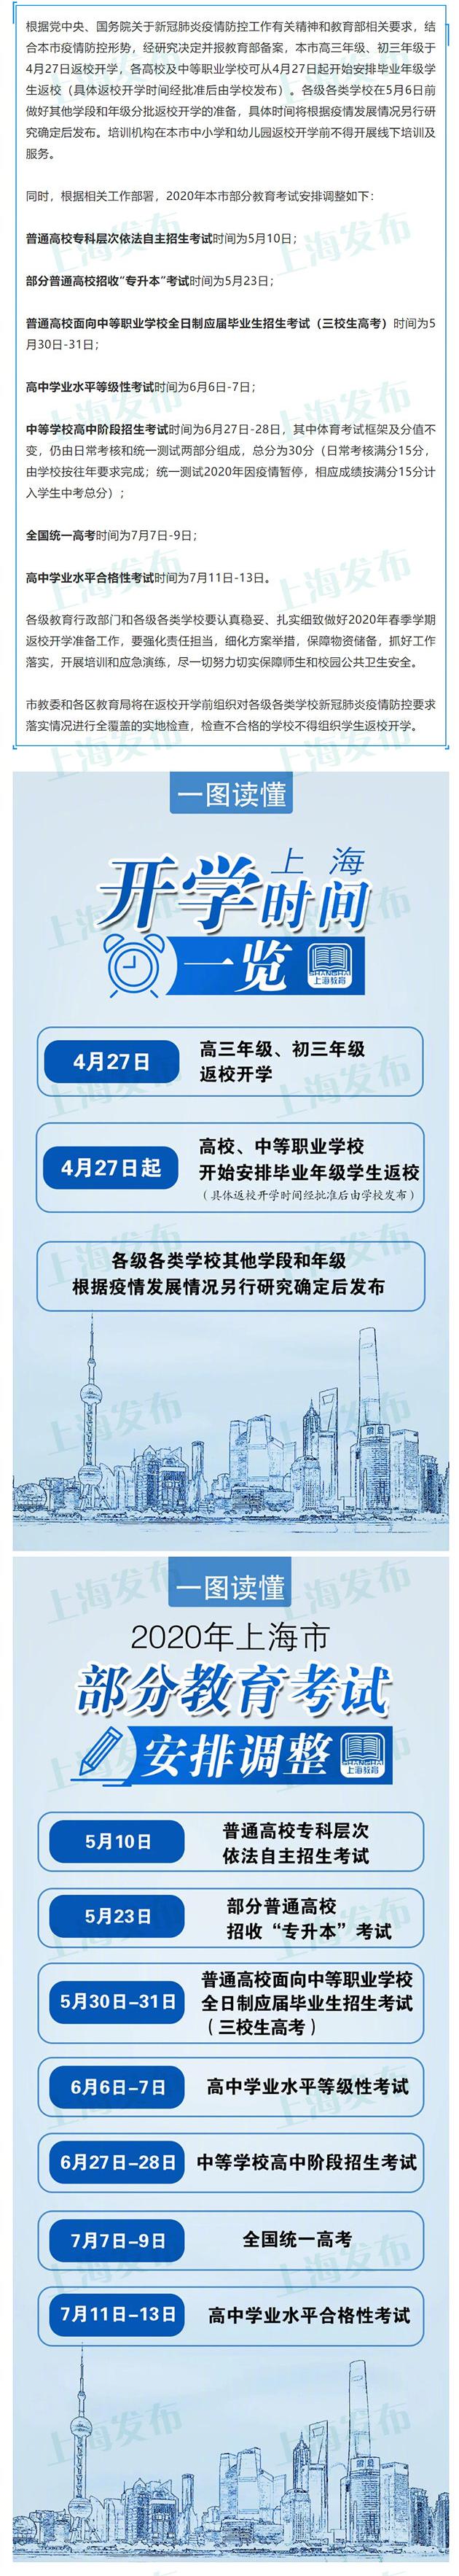 上海返校开学时间确定 部分教育考试安排调整